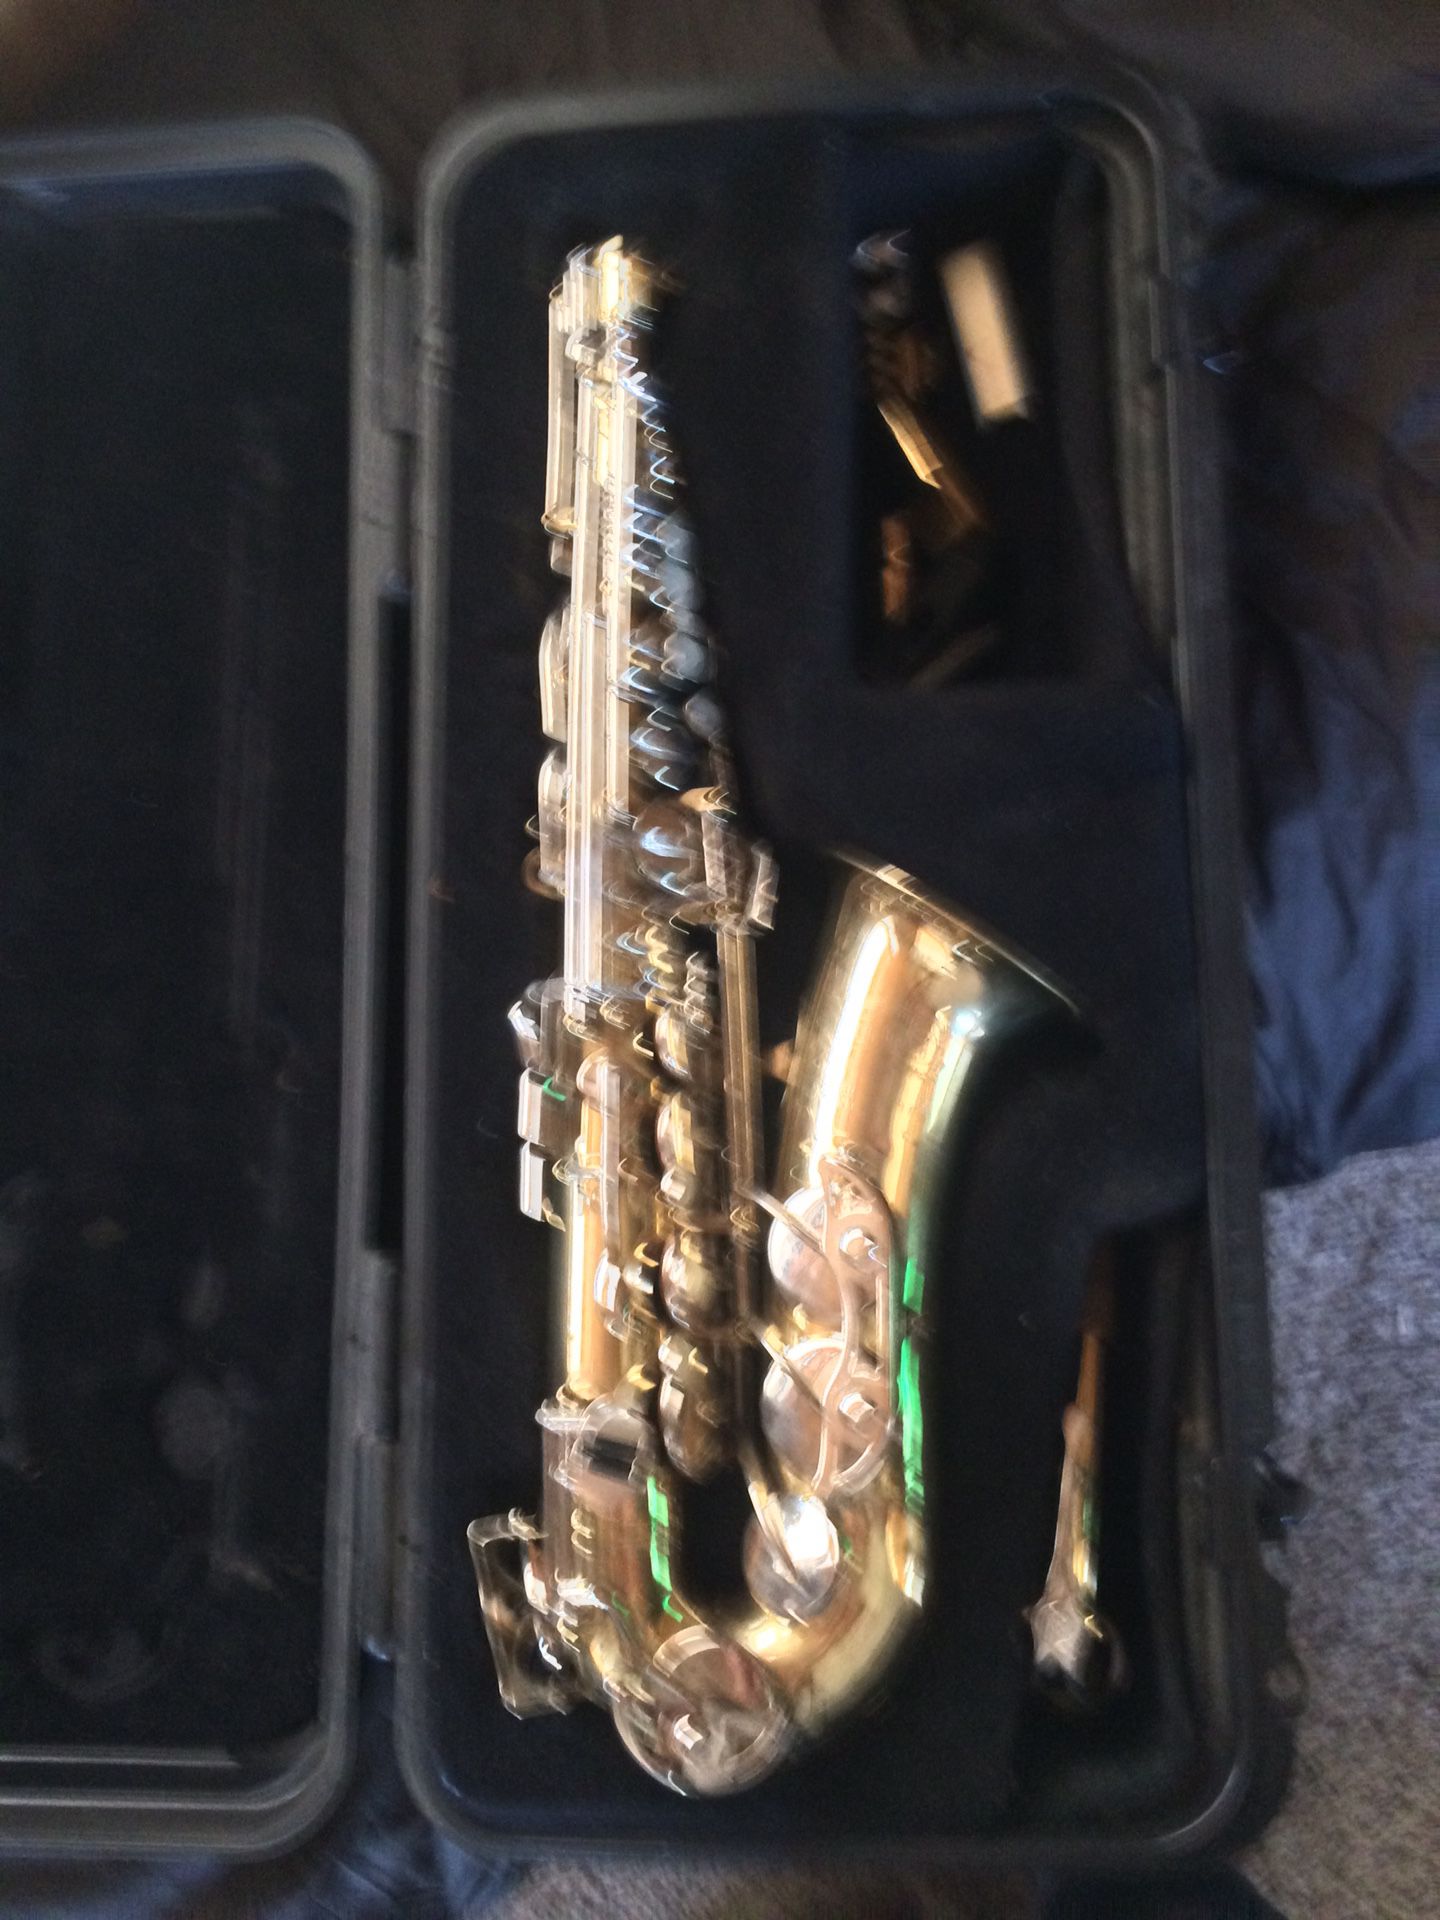 Bundy saxophone